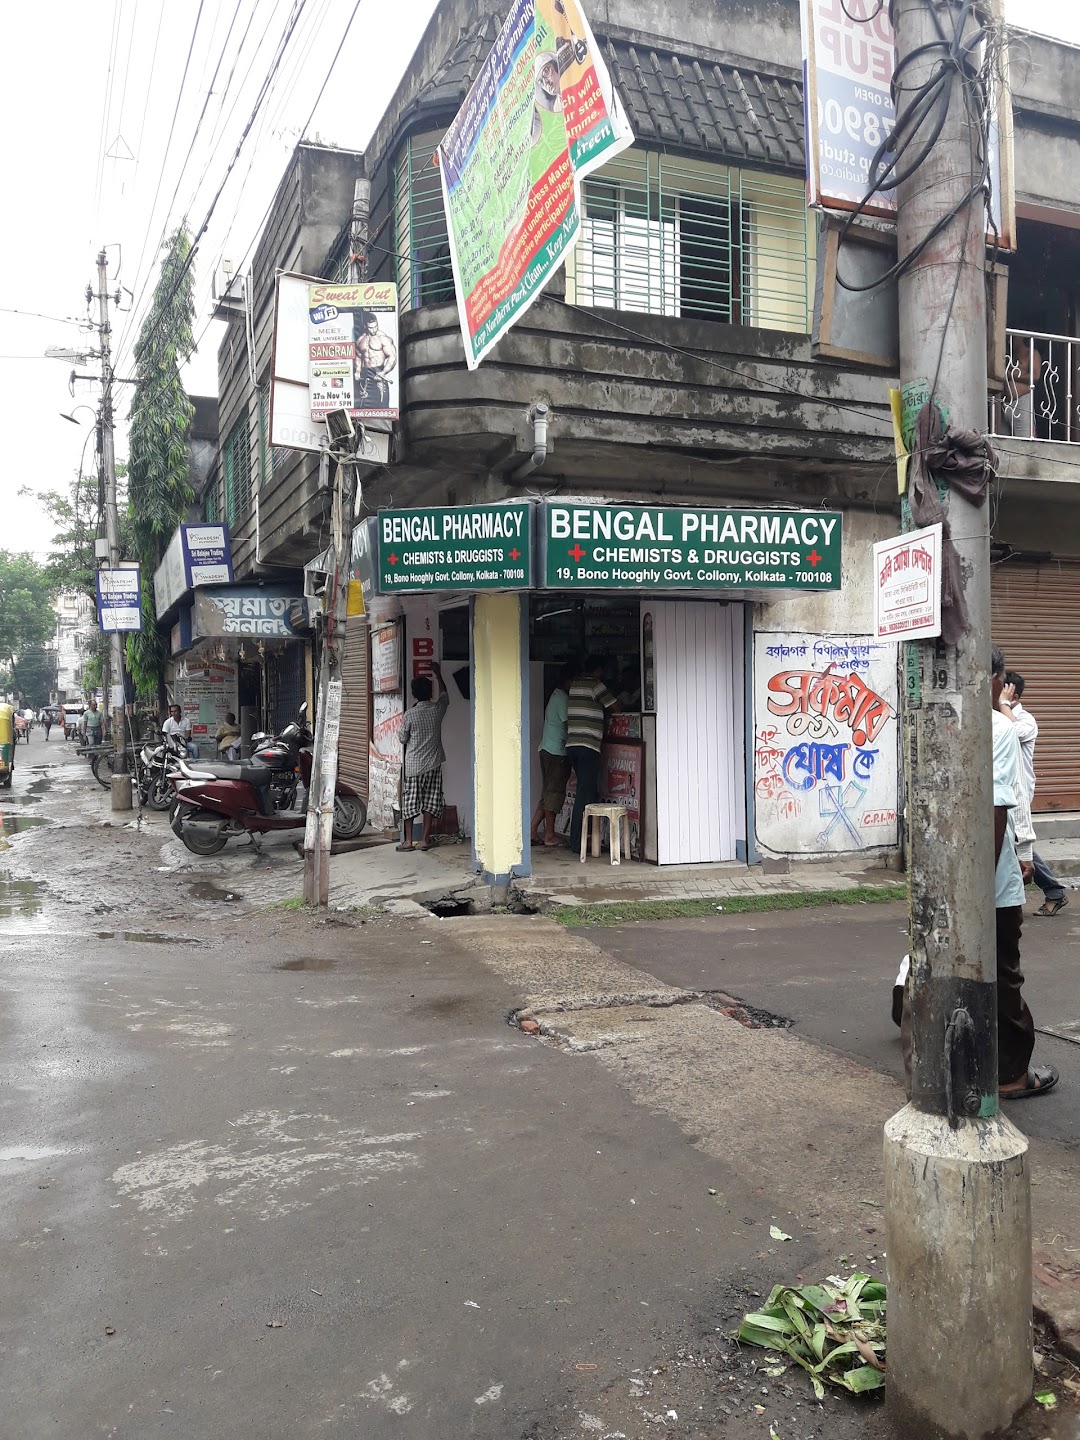 Bengal Pharmacy